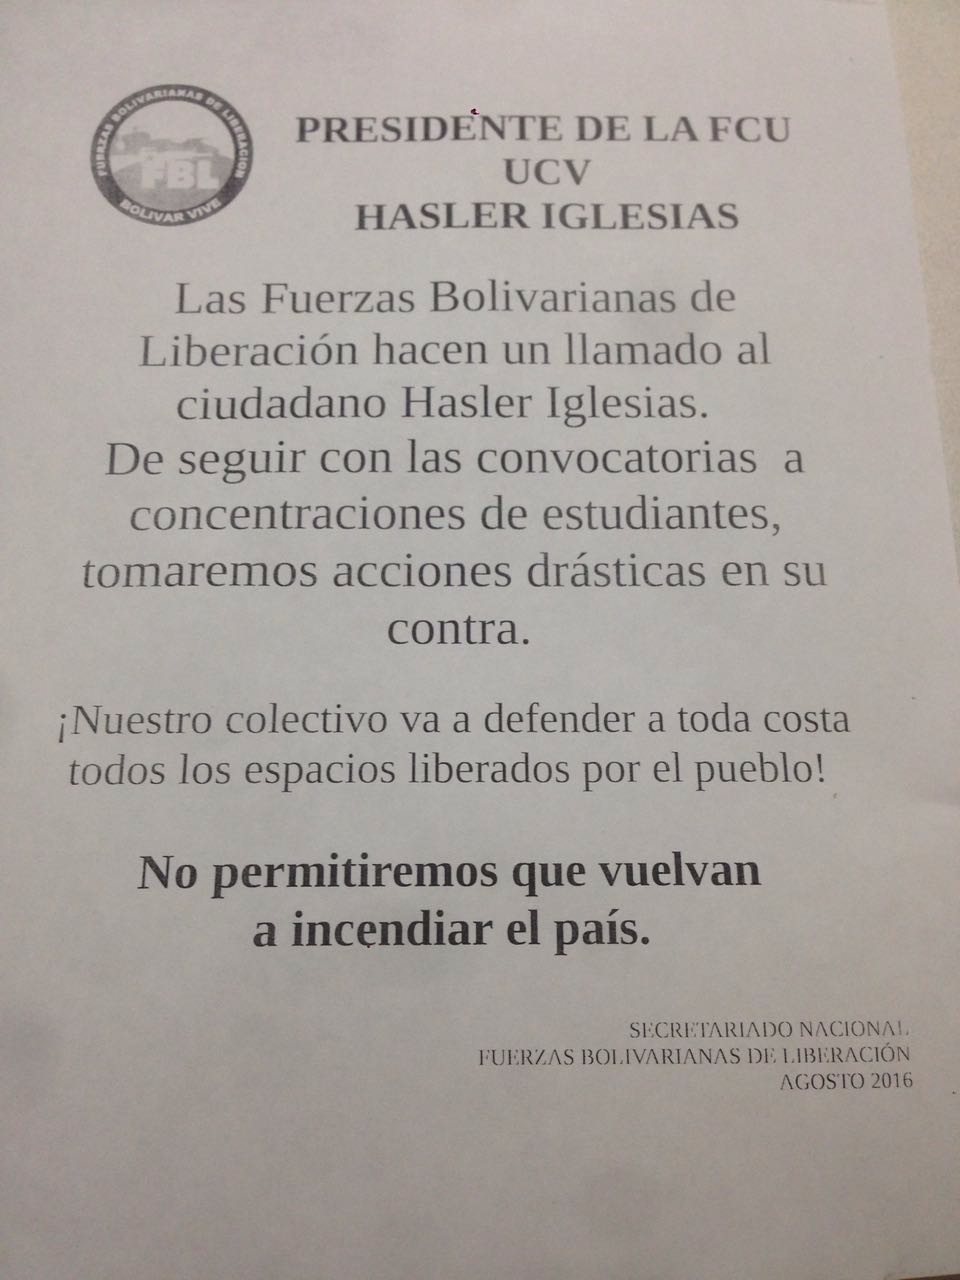 Valientes chavistas amenazan a presidente de la FCU-UCV lanzando ESTE panfleto a su casa